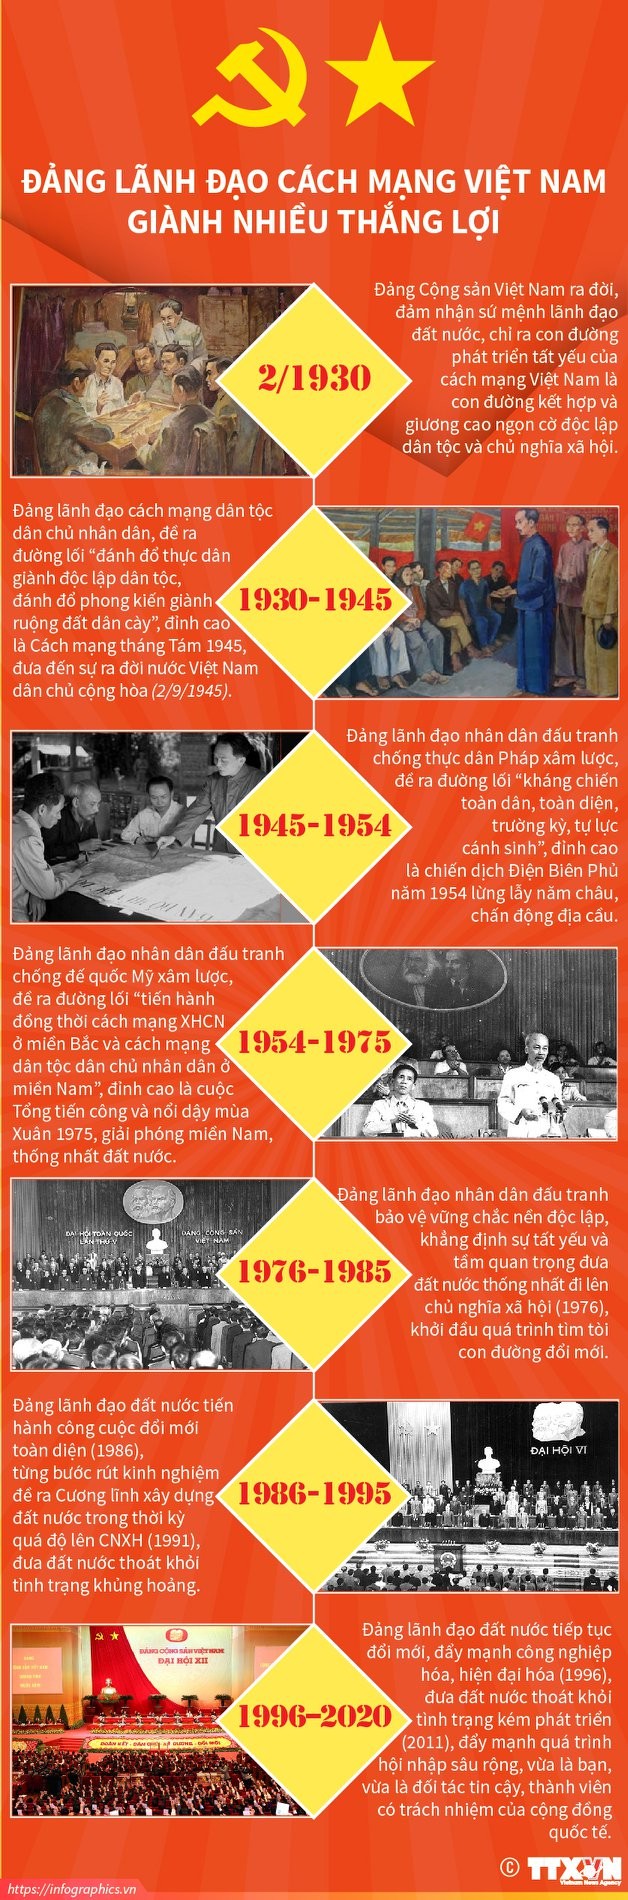 Những mốc son của cách mạng Việt Nam dưới sự lãnh đạo của Đảng - ảnh 1